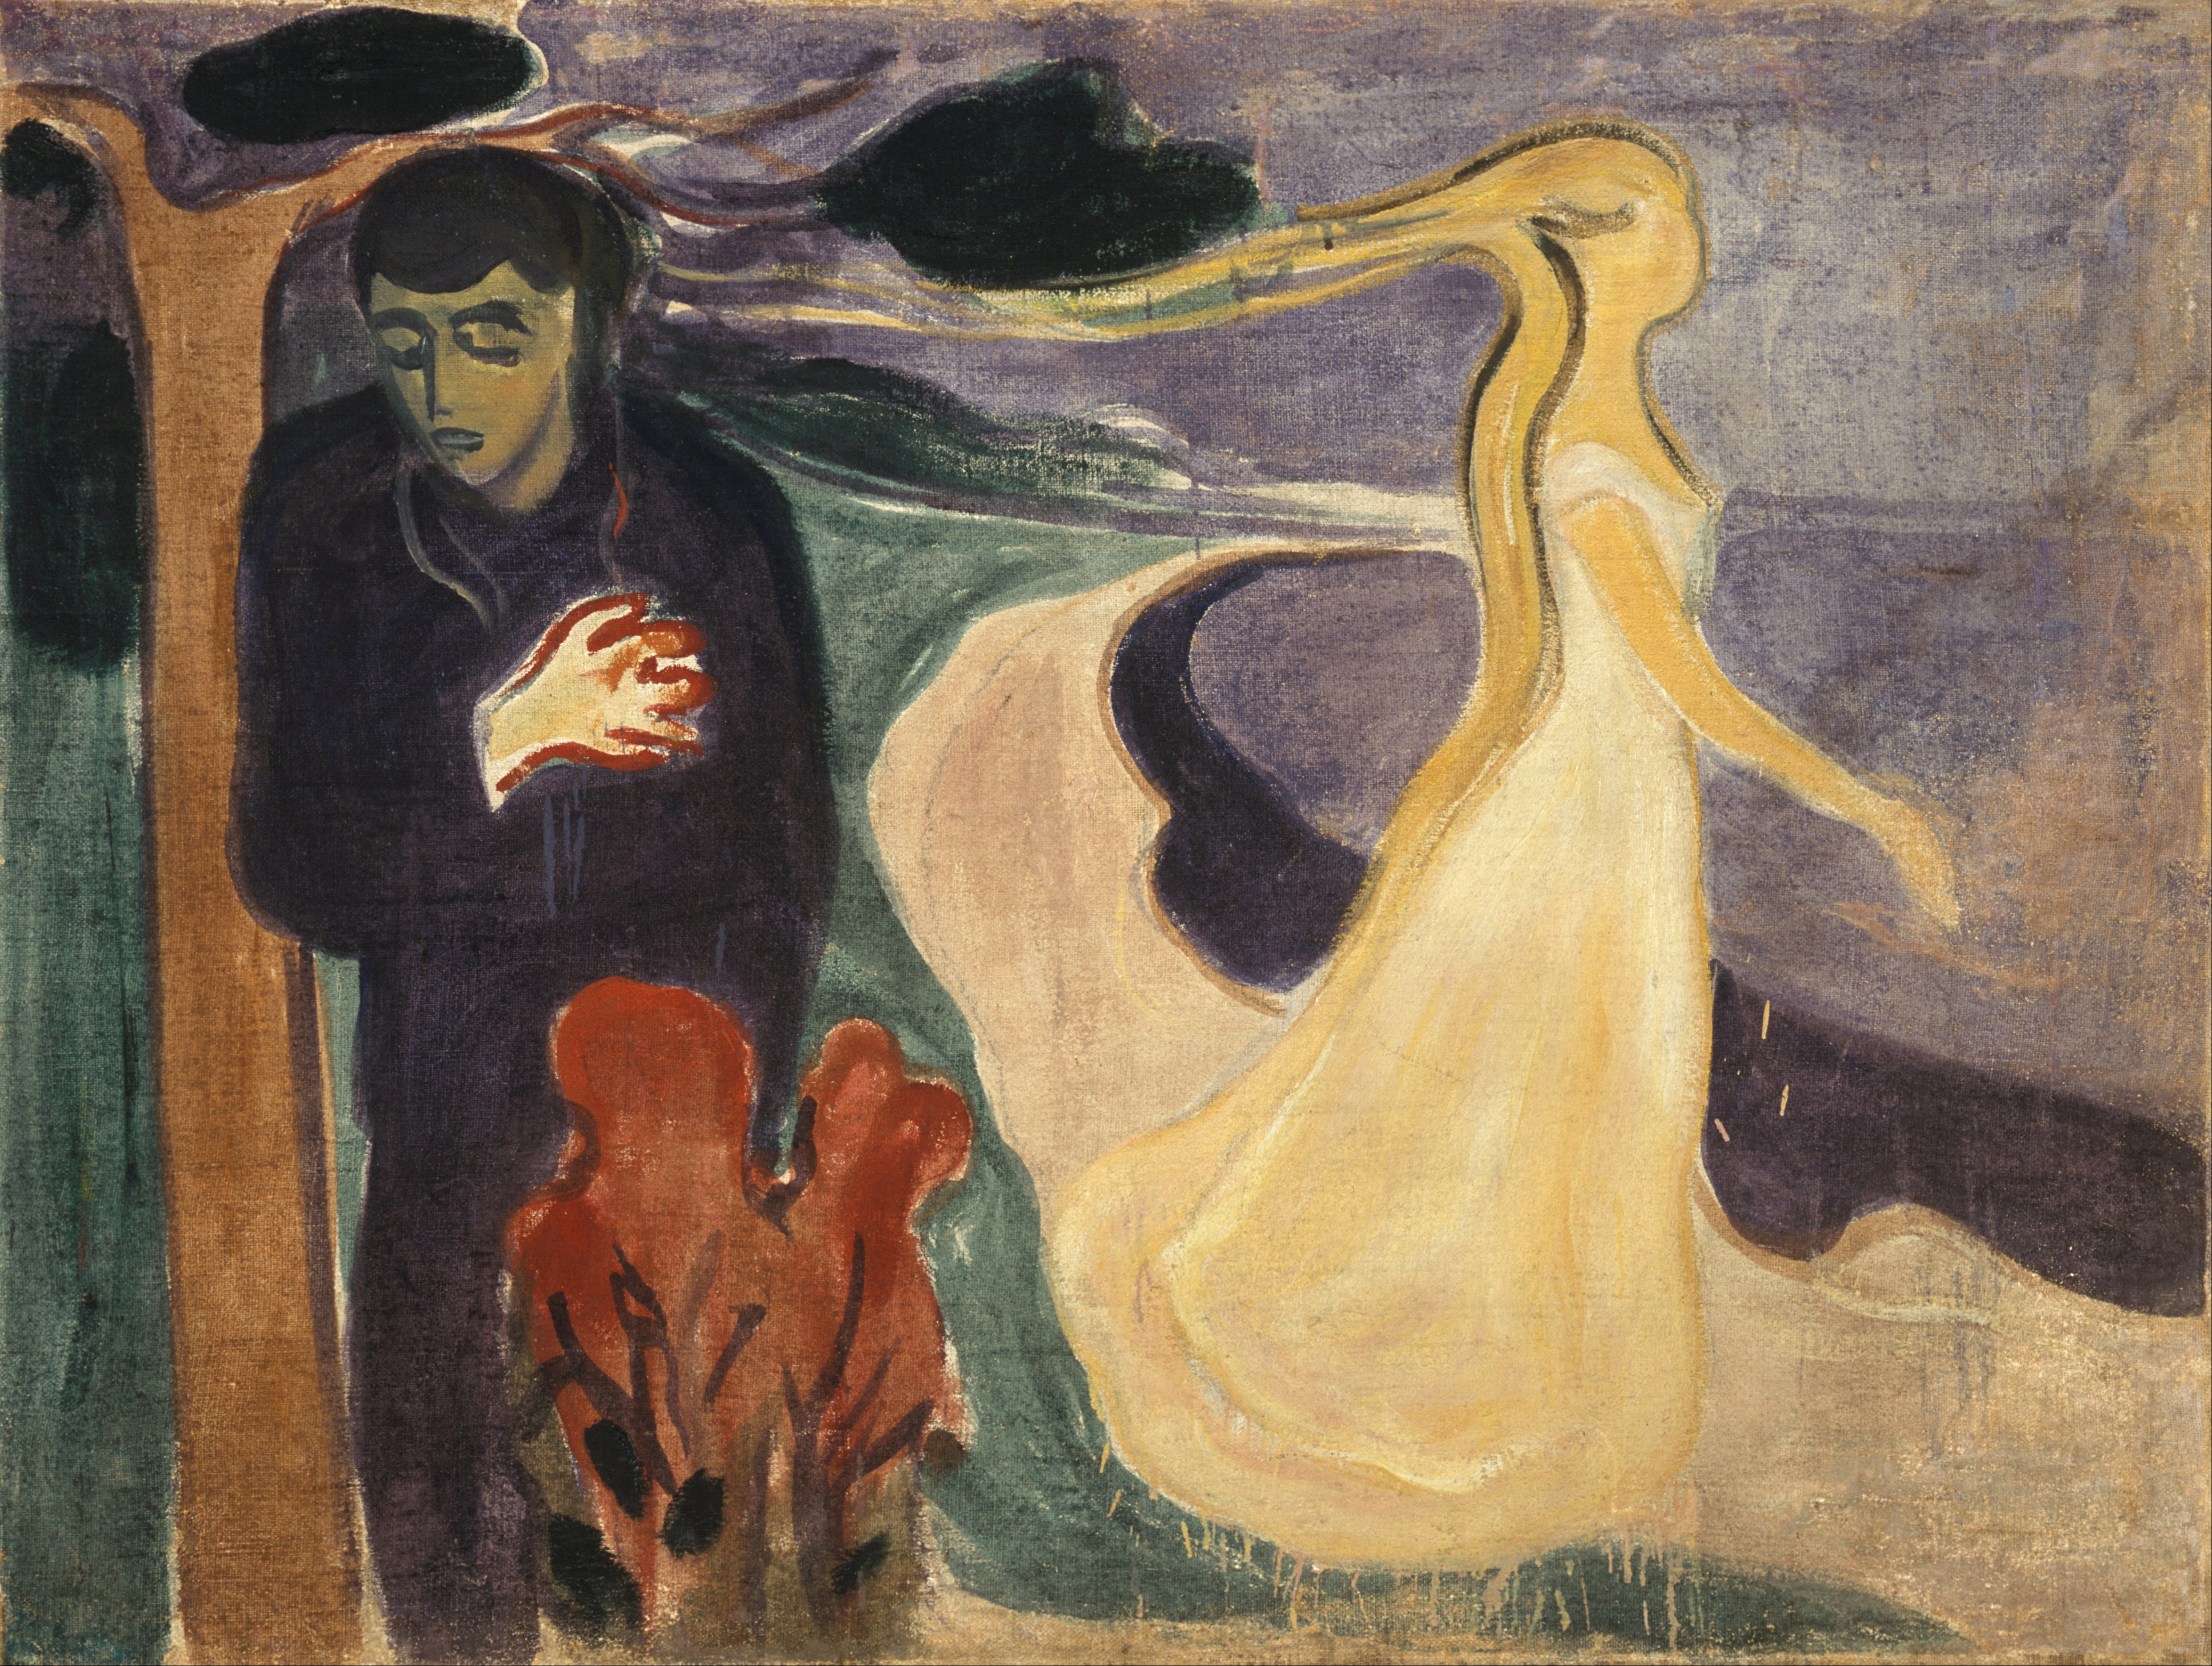 Расставание by Edvard Munch - 1896 - 127 x 96 см 